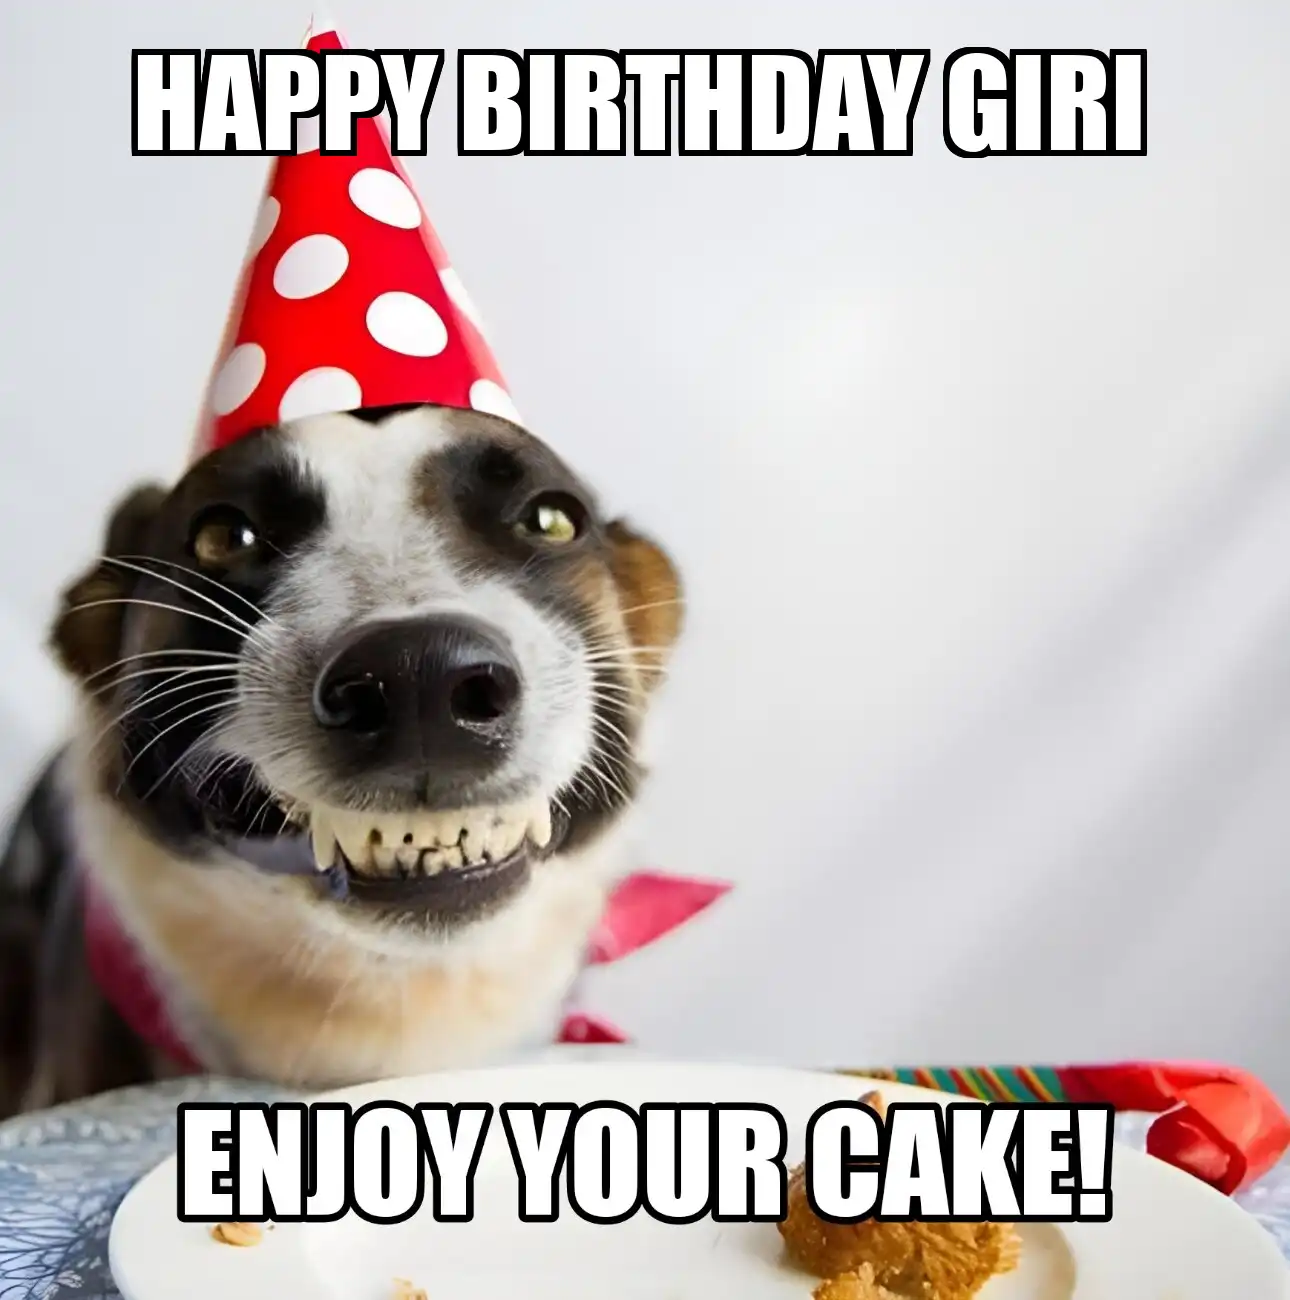 Happy Birthday Giri Enjoy Your Cake Dog Meme